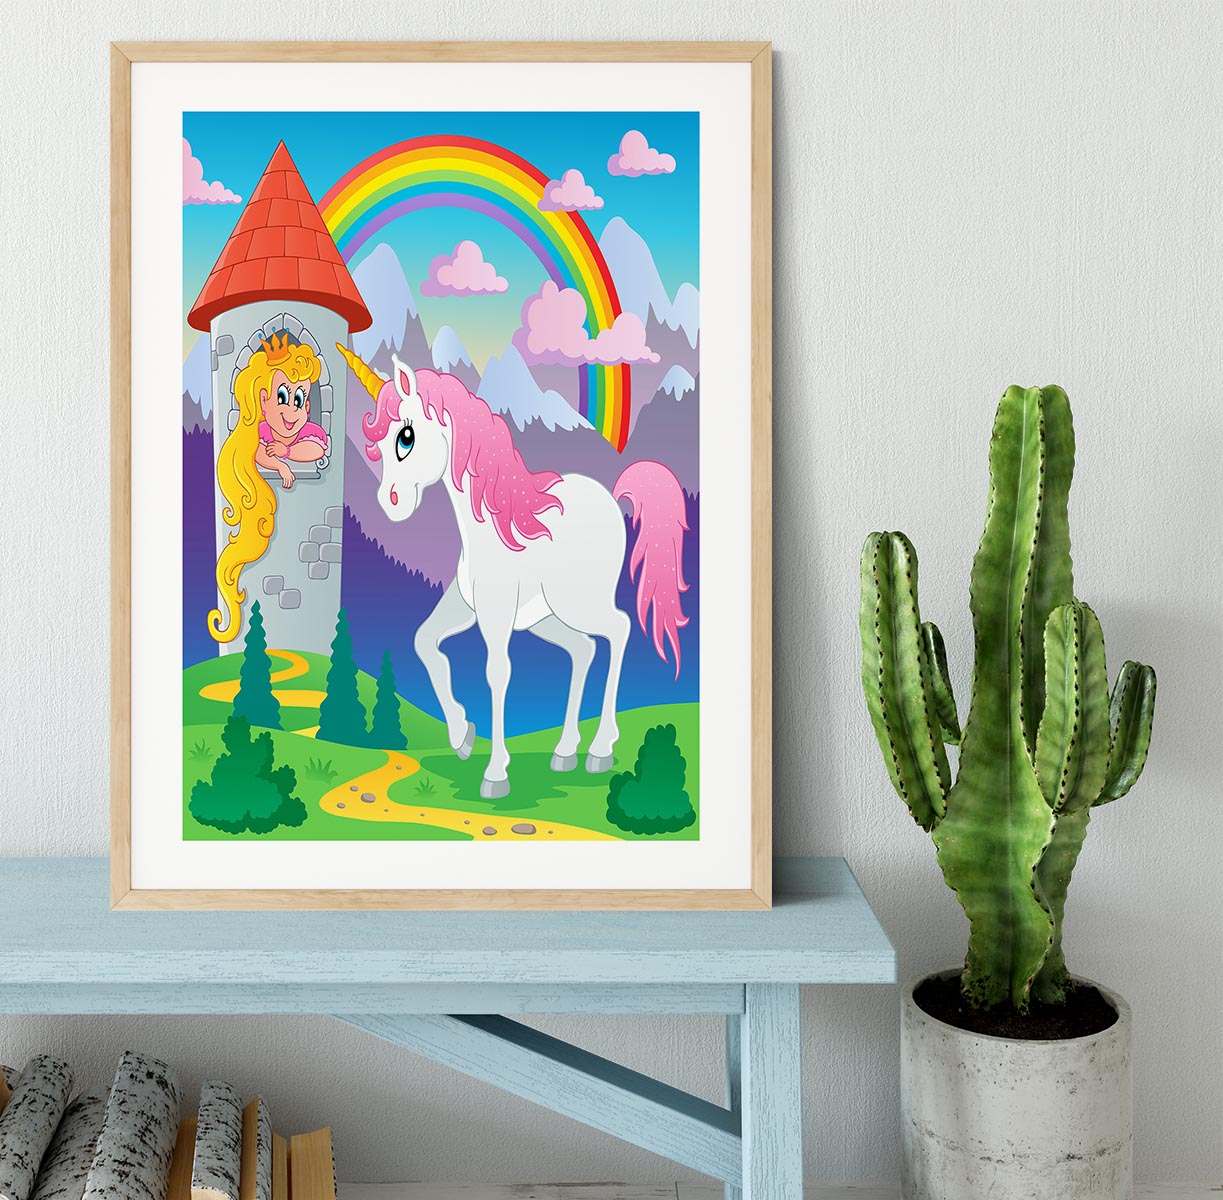 Fairy tale unicorn theme Framed Print - Canvas Art Rocks - 3